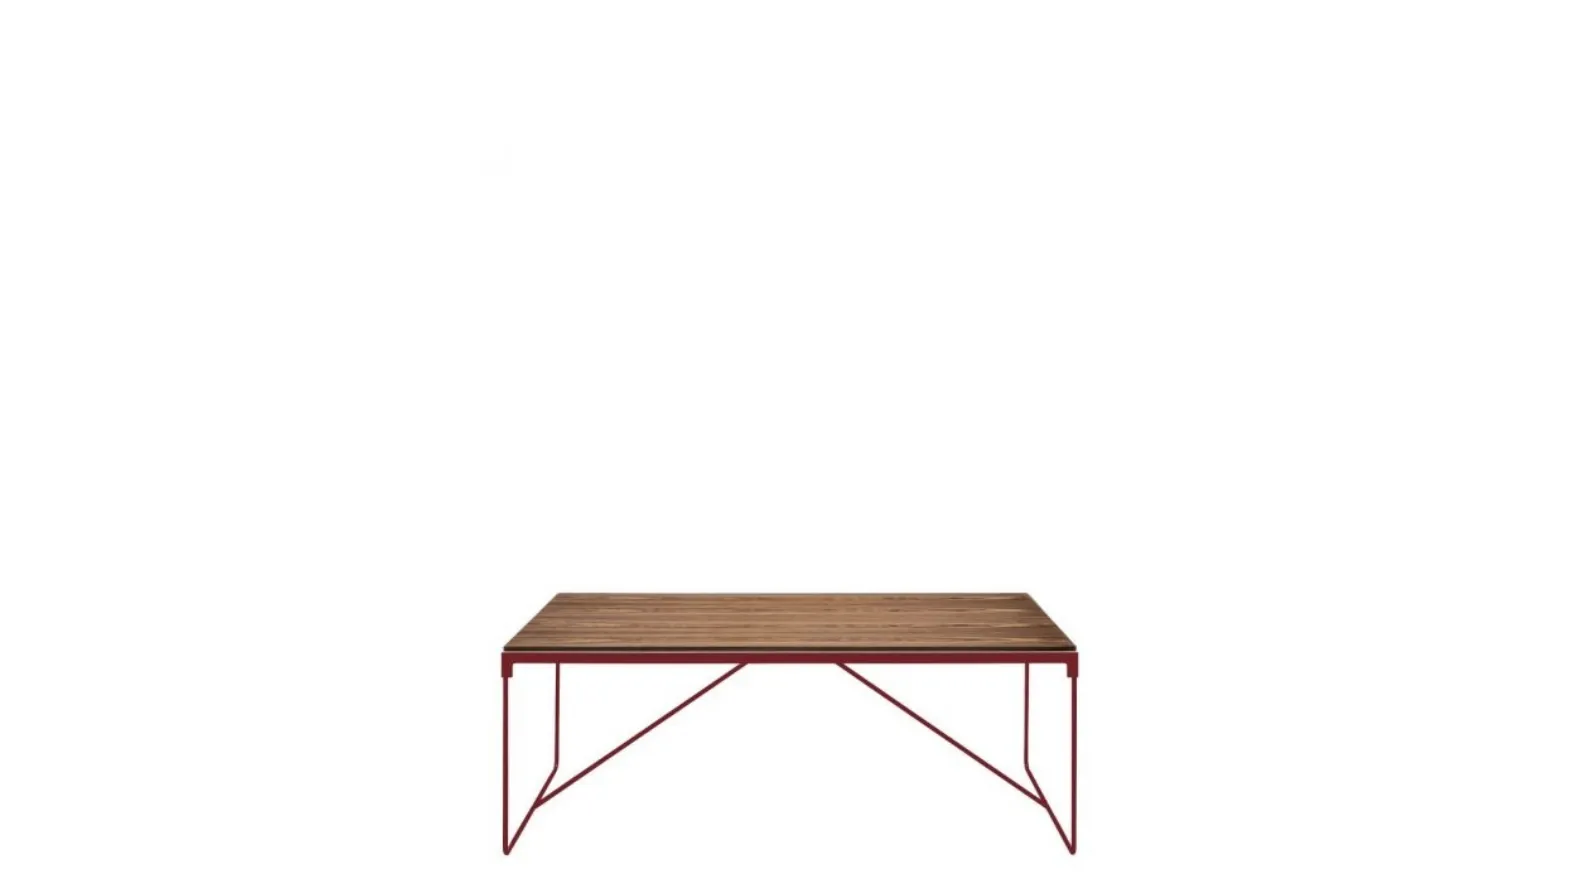 Tavolo con struttura in tubo e lamiera di acciaio verniciato e piano in mdf MINGX di Driade